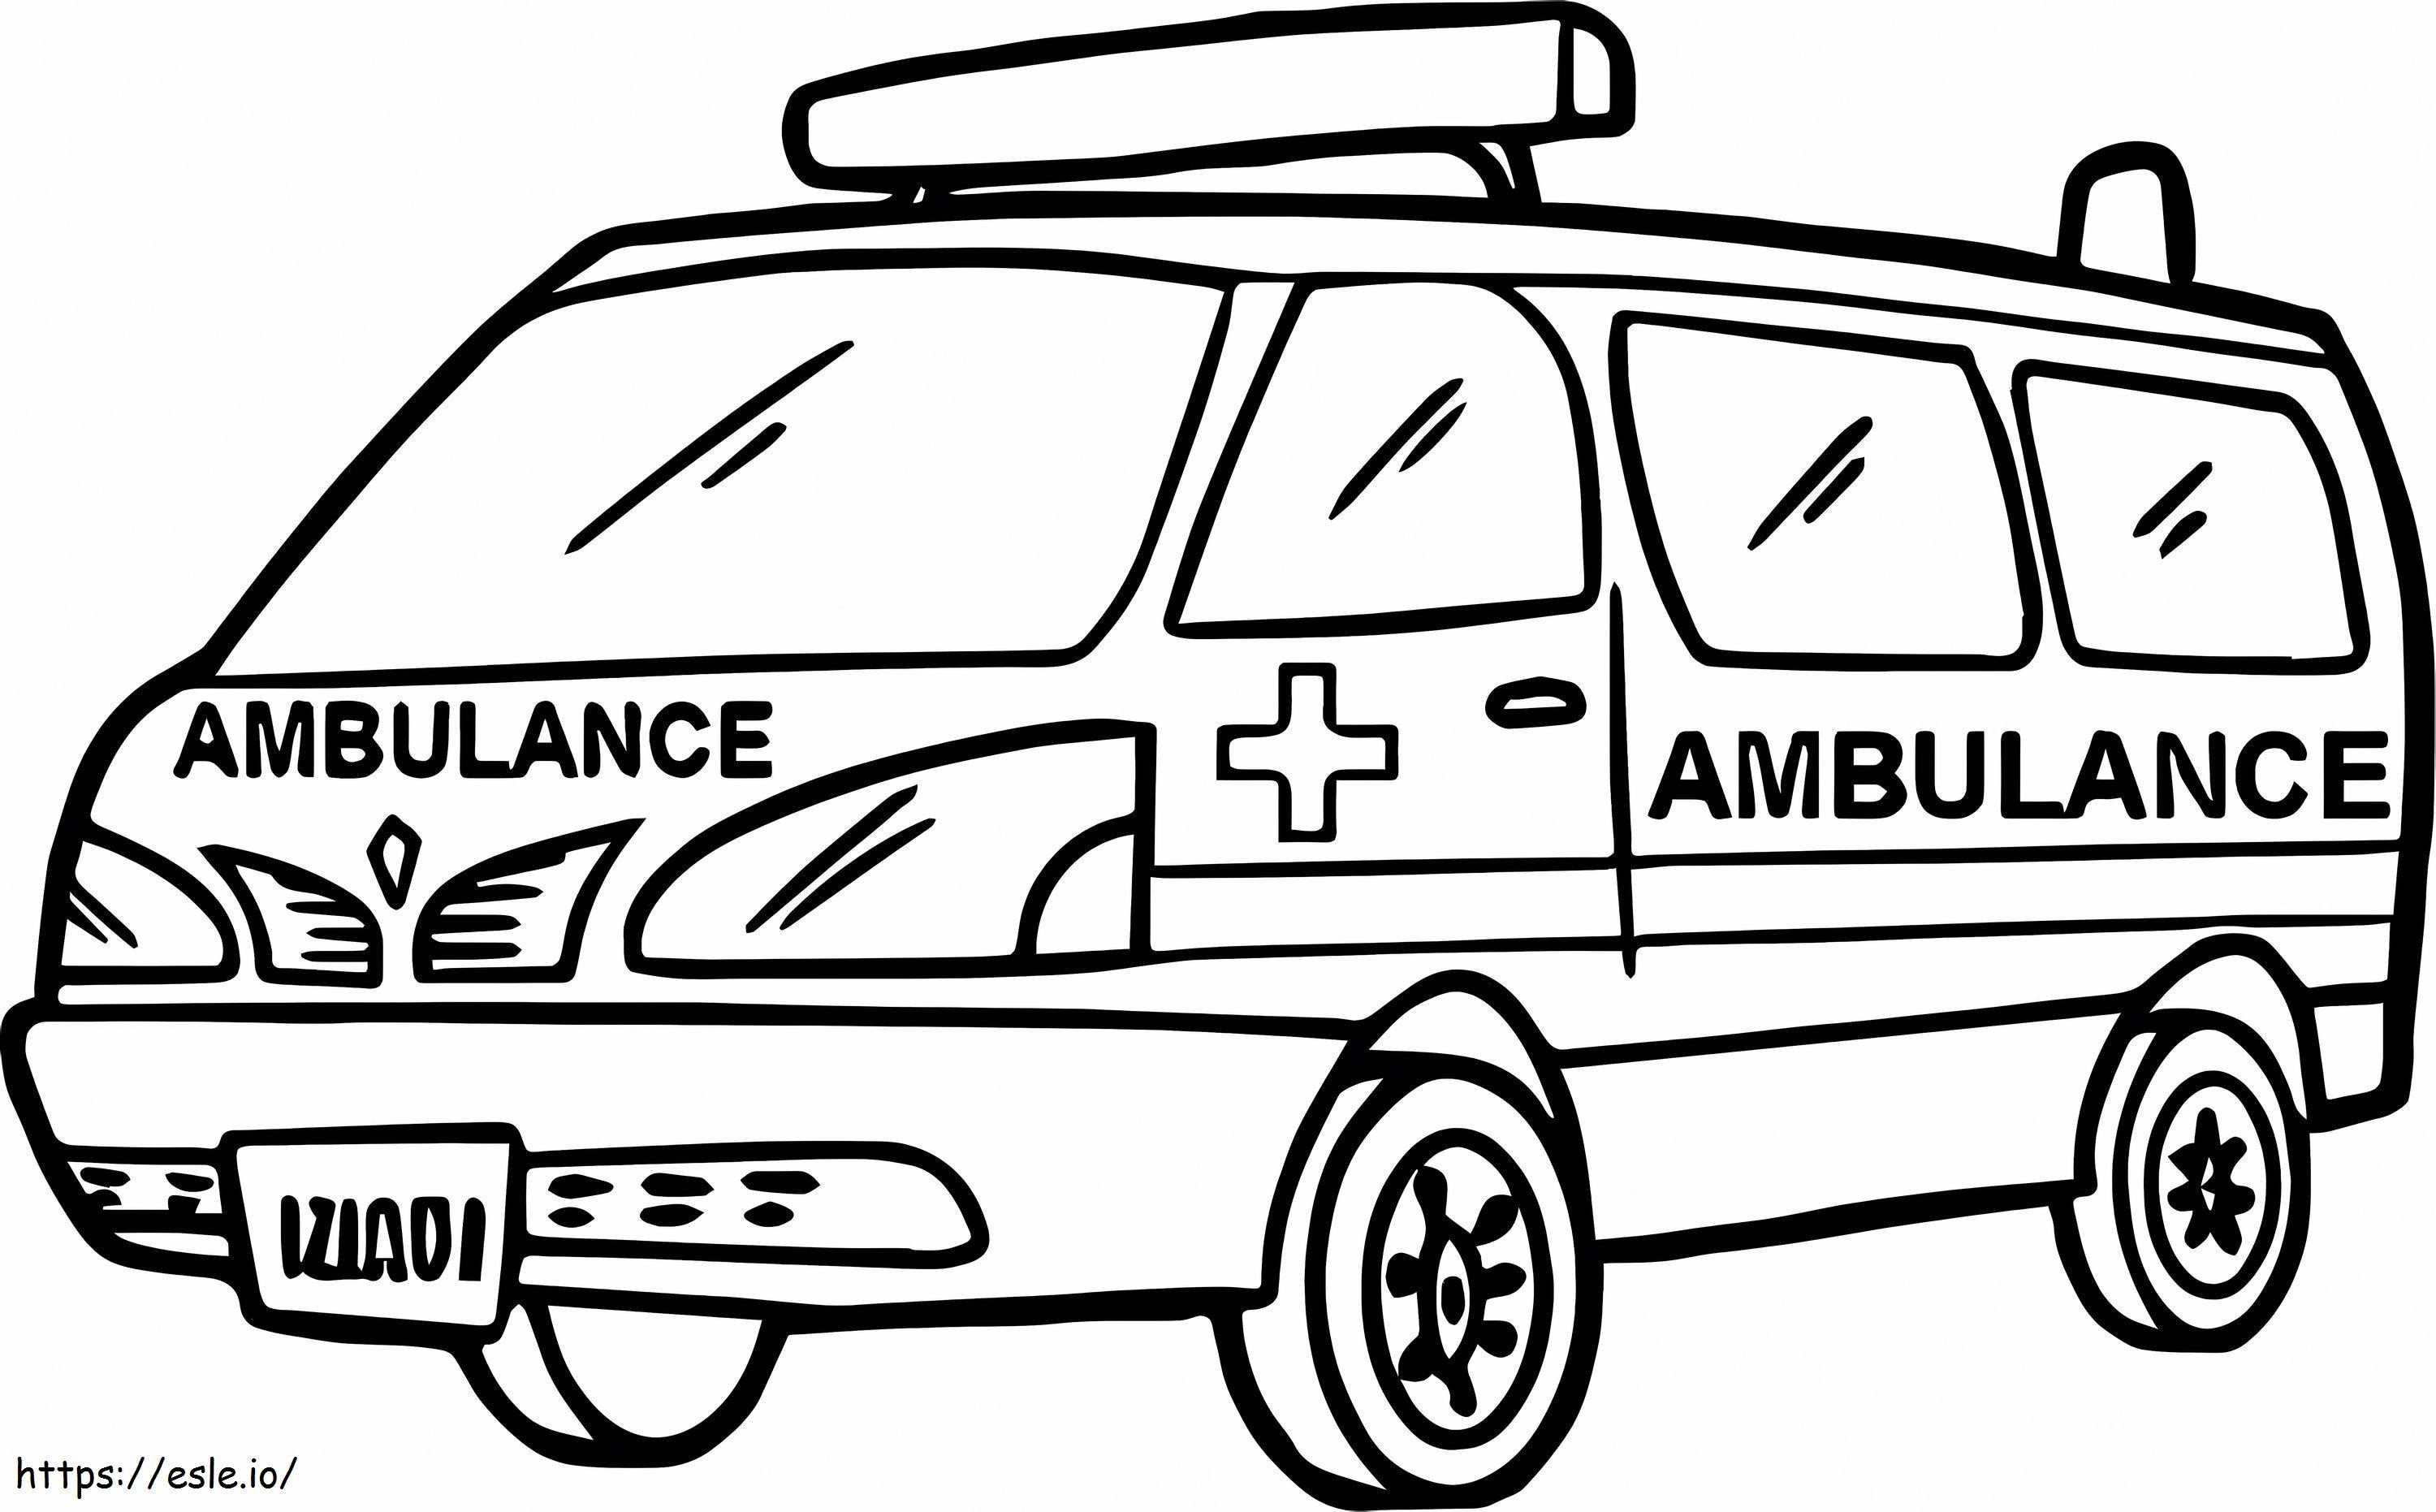 Ambulans Çizimi boyama